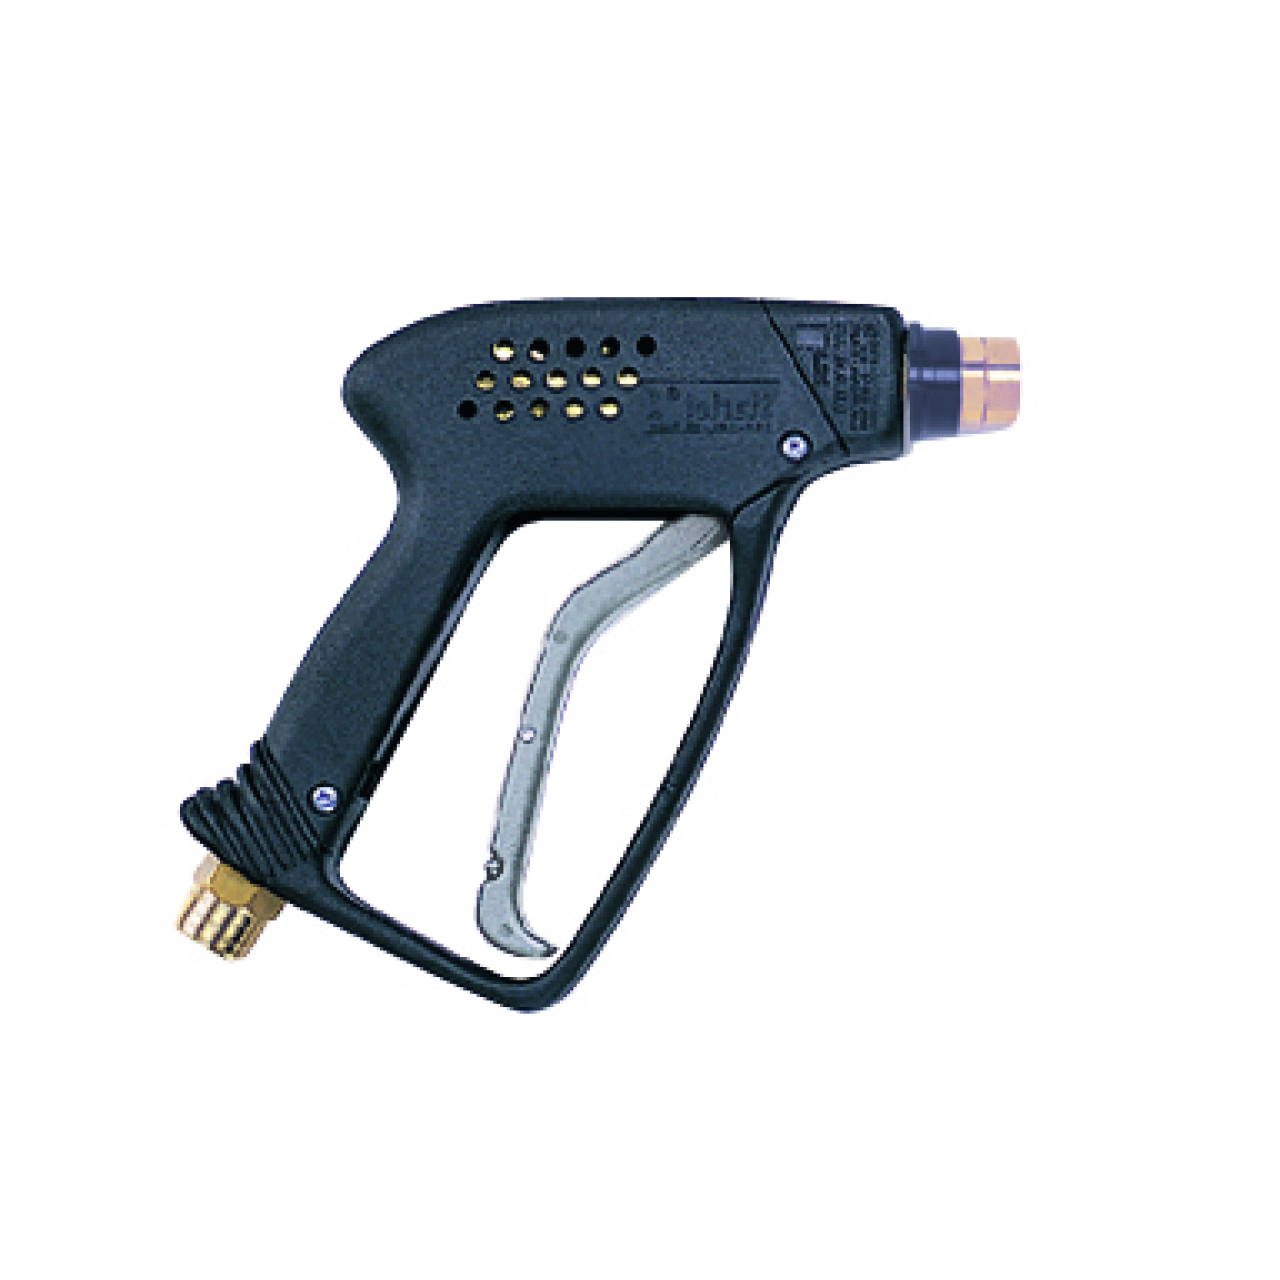 Sicherheits-Abschaltpistole Starlet, kurze Ausführung